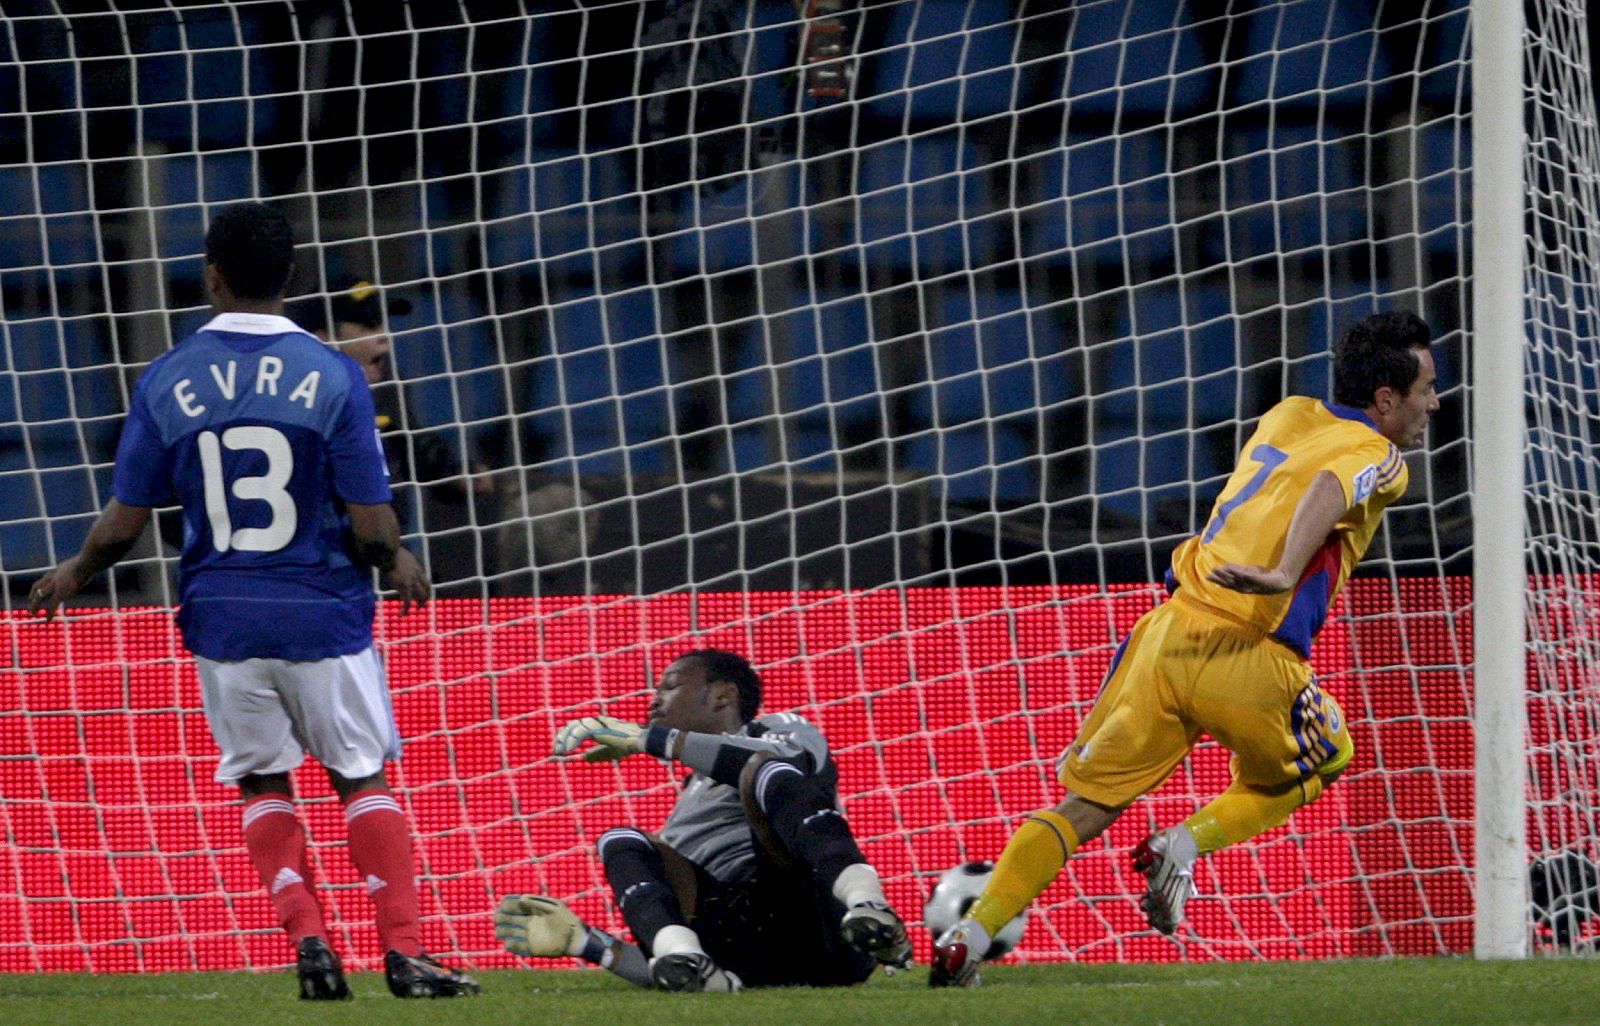 El rumano Petreo celebra un gol ante el portero francés Mandanda y el defensa Evra.